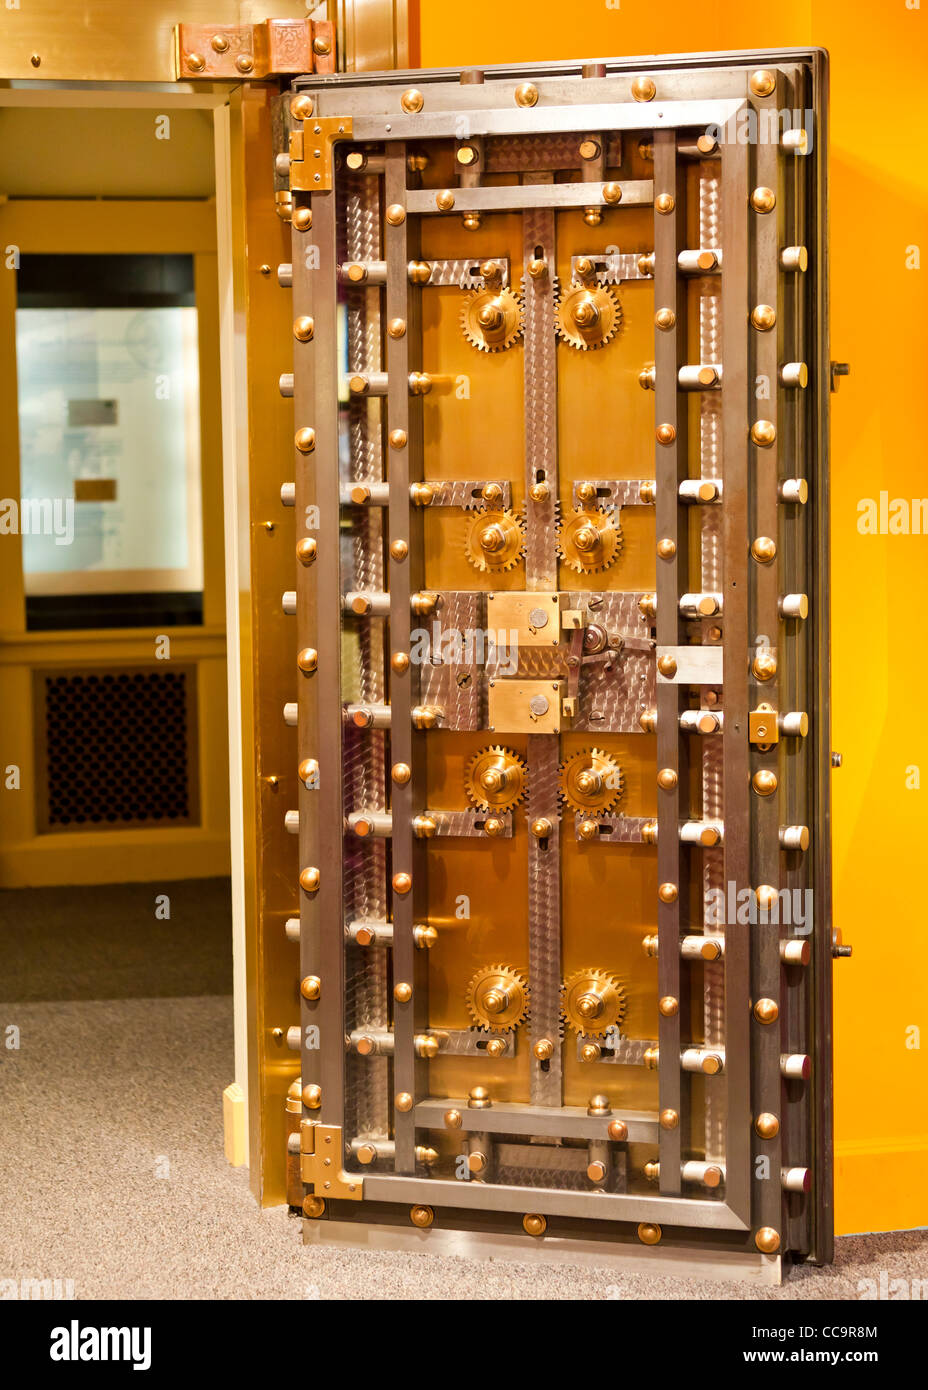 Interior view of a bank vault door Stock Photo